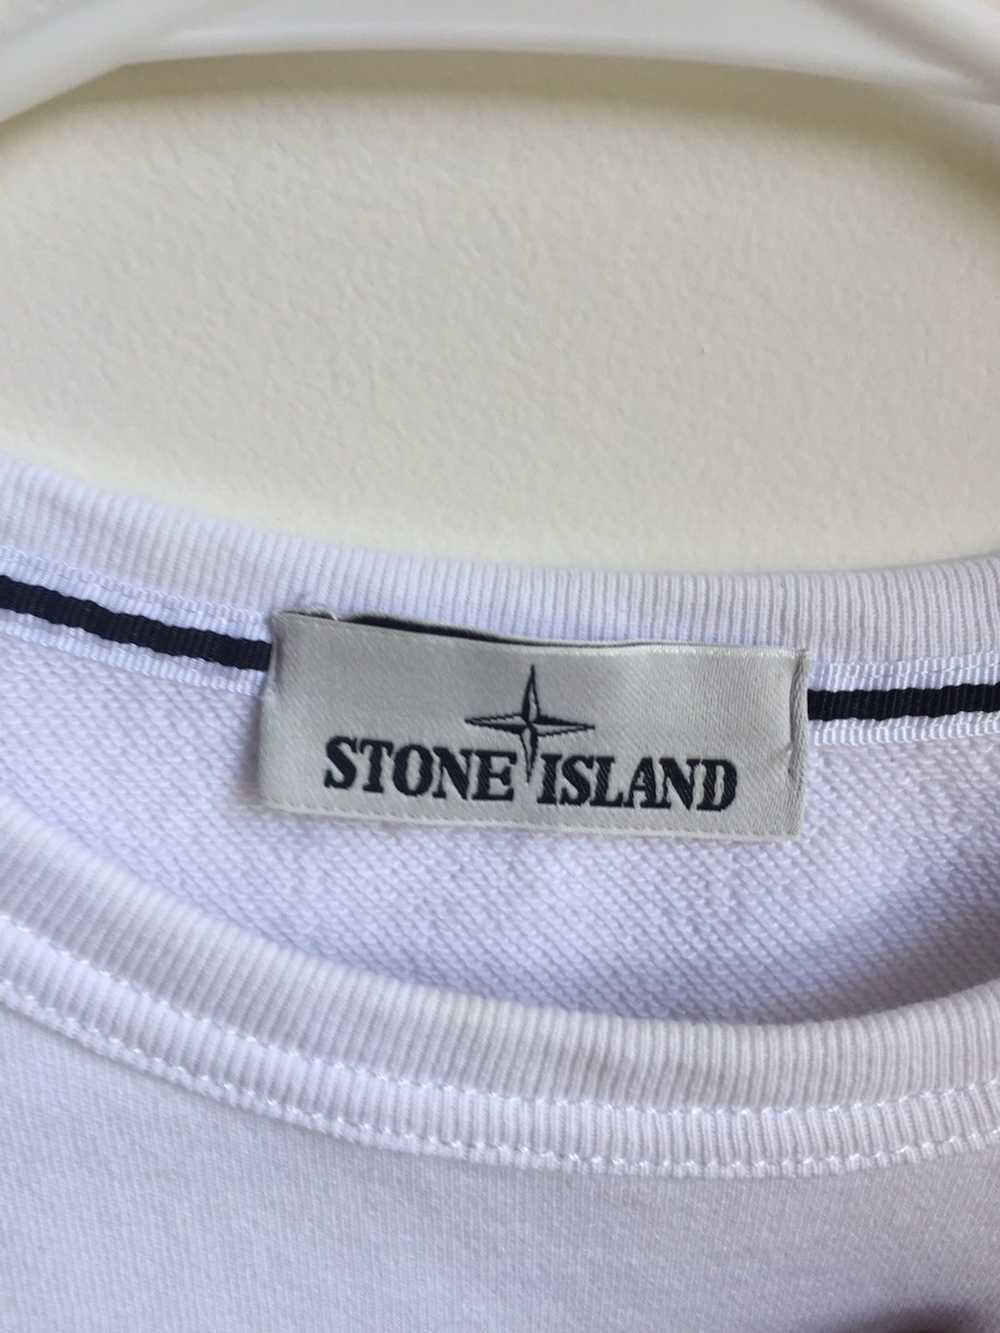 Stone Island Stone Island Crewneck White Size Med… - image 4